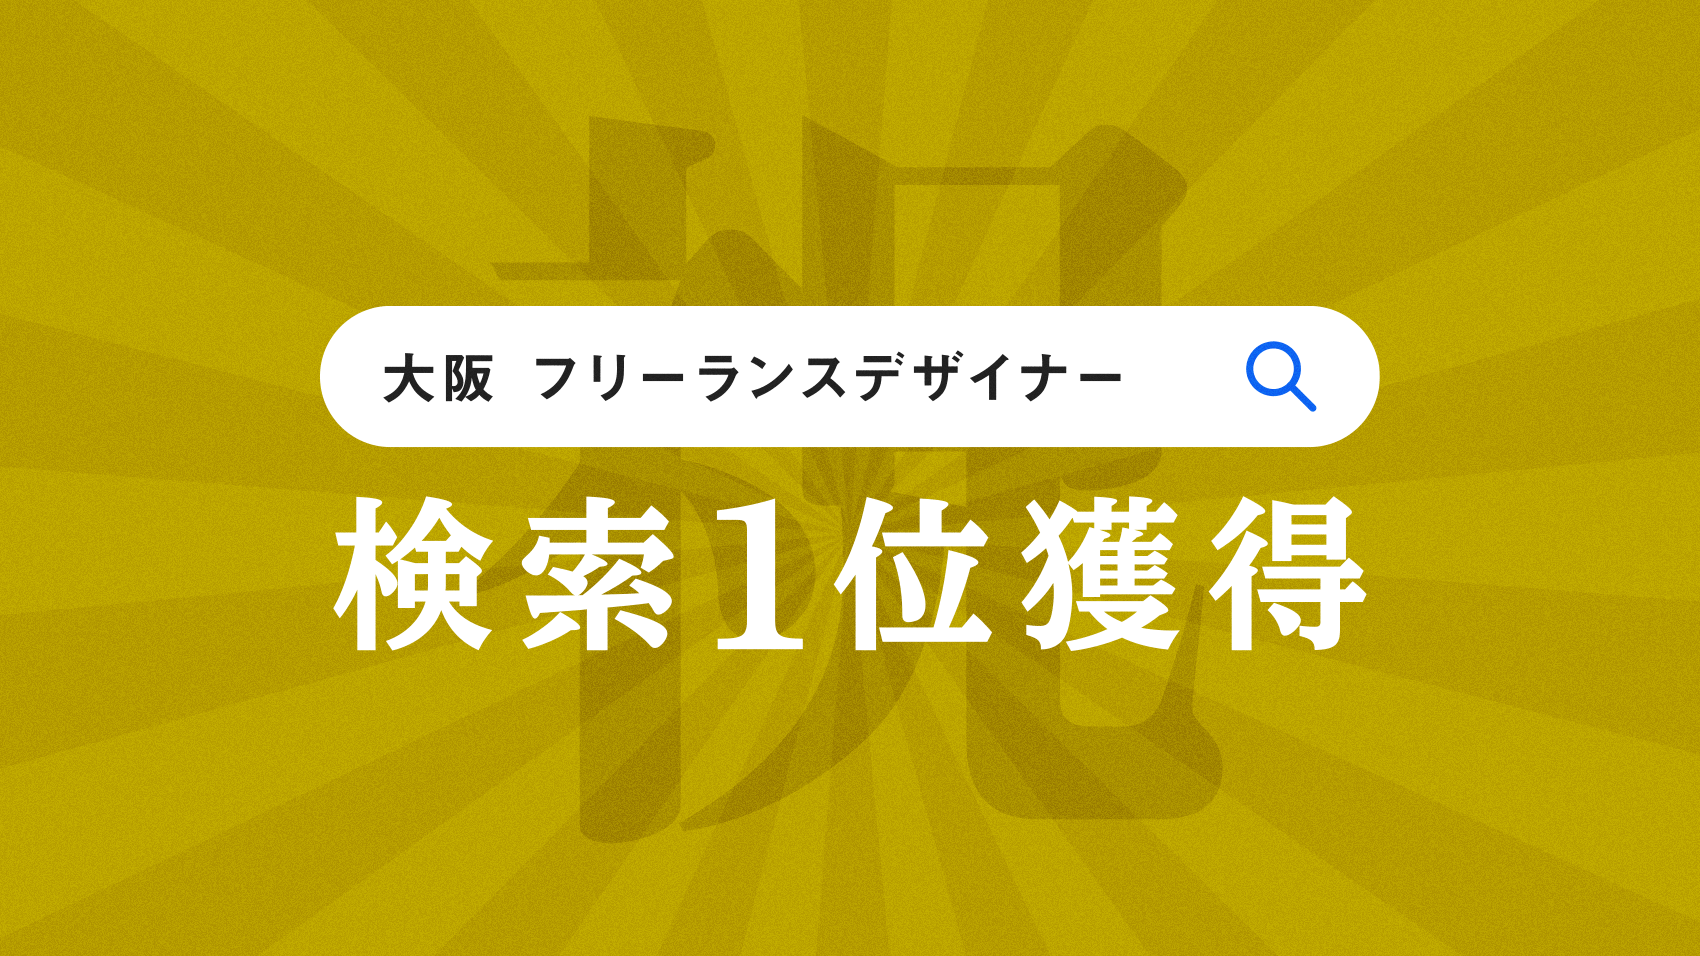 「大阪 フリーランスデザイナー」でgoogle検索すると実質１位になりました